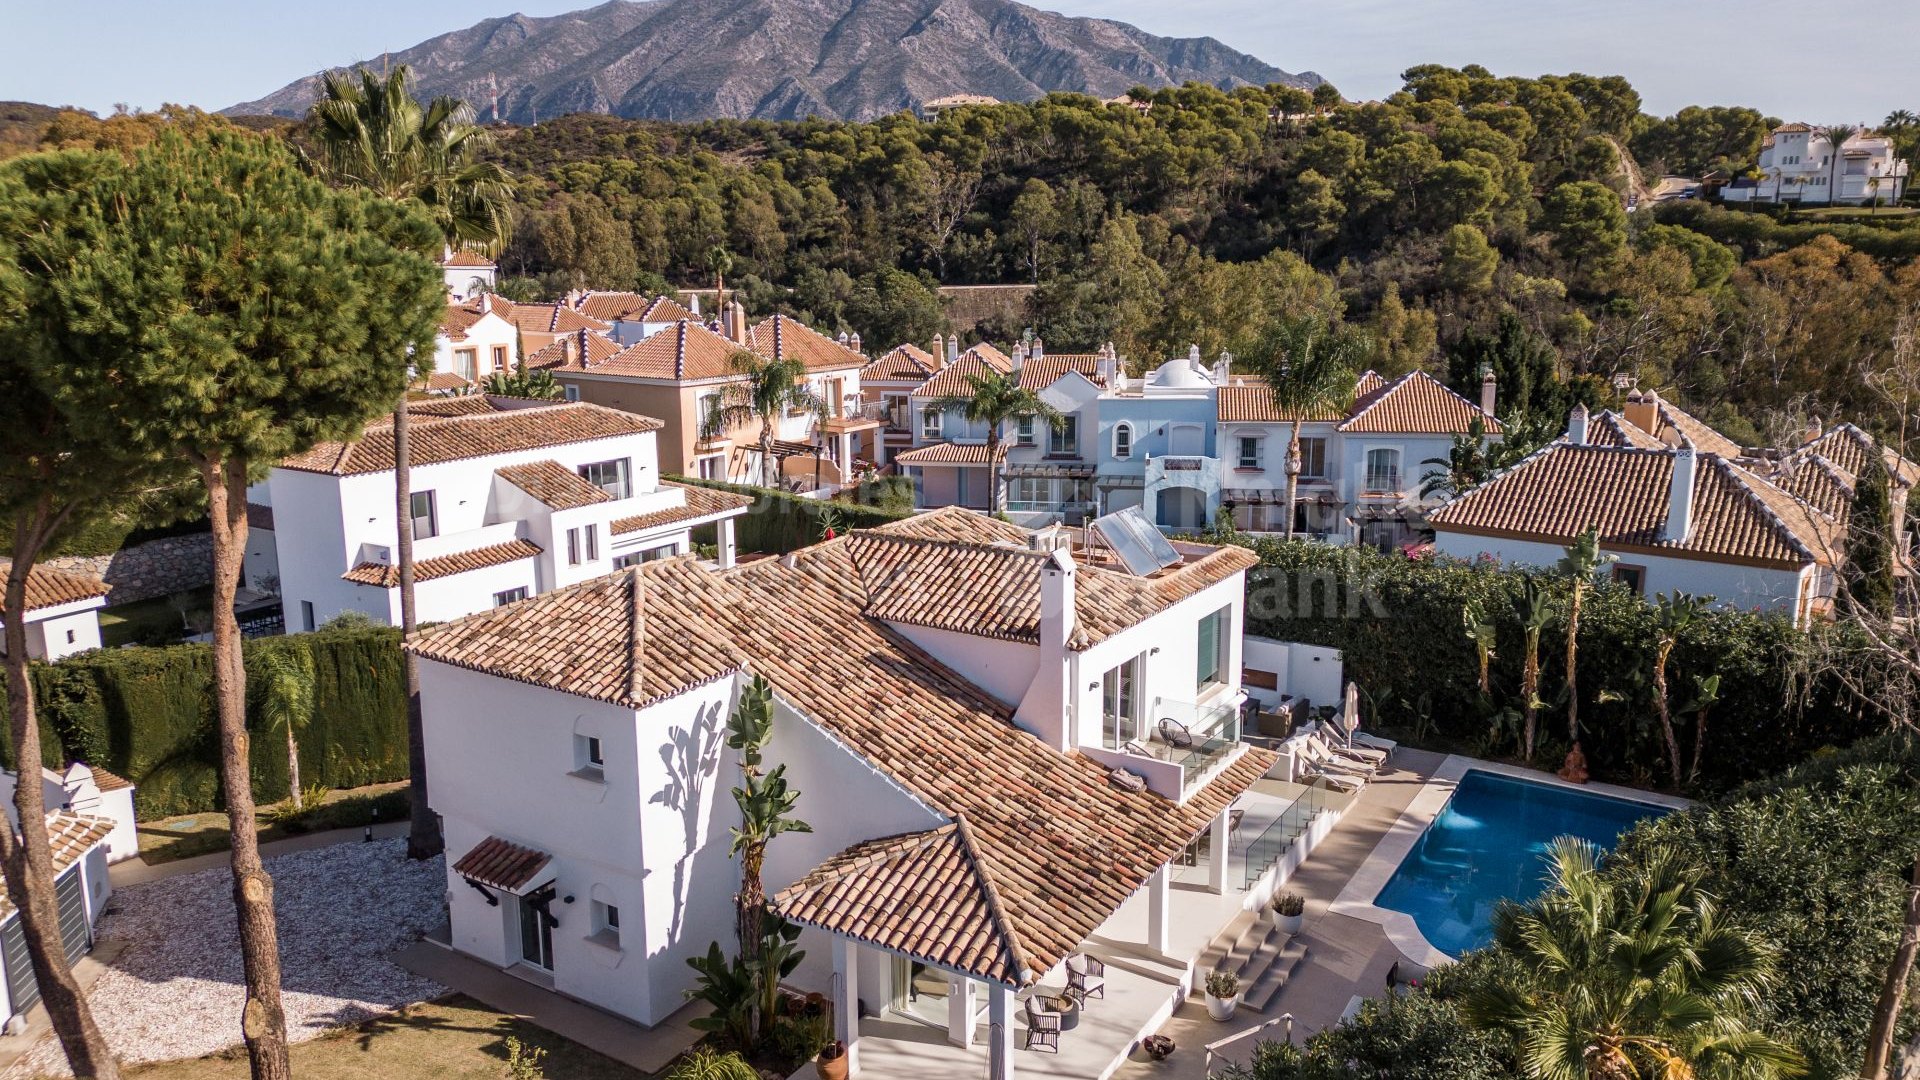 Marbella Country Club, Villa Mirasol, casa en urbanización vallada cerca del golf